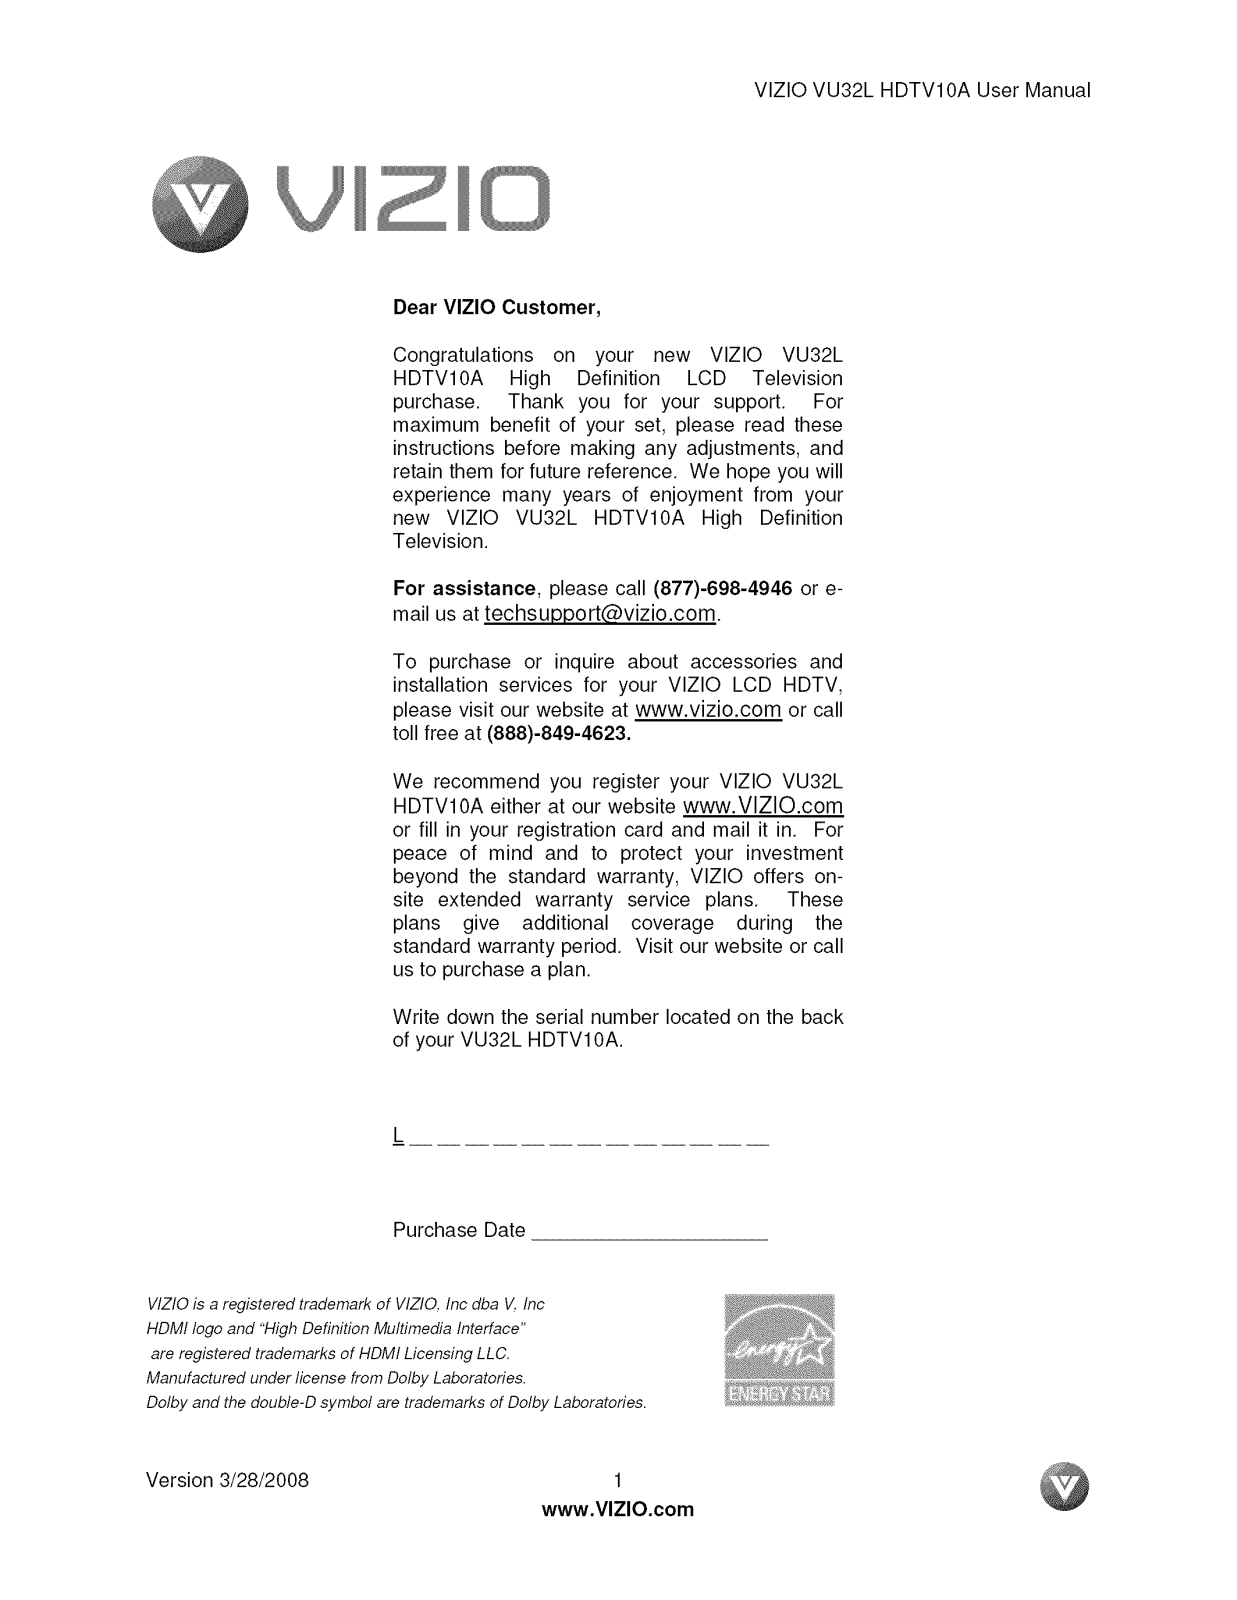 Vizio VU32LHDTV10A Owner’s Manual